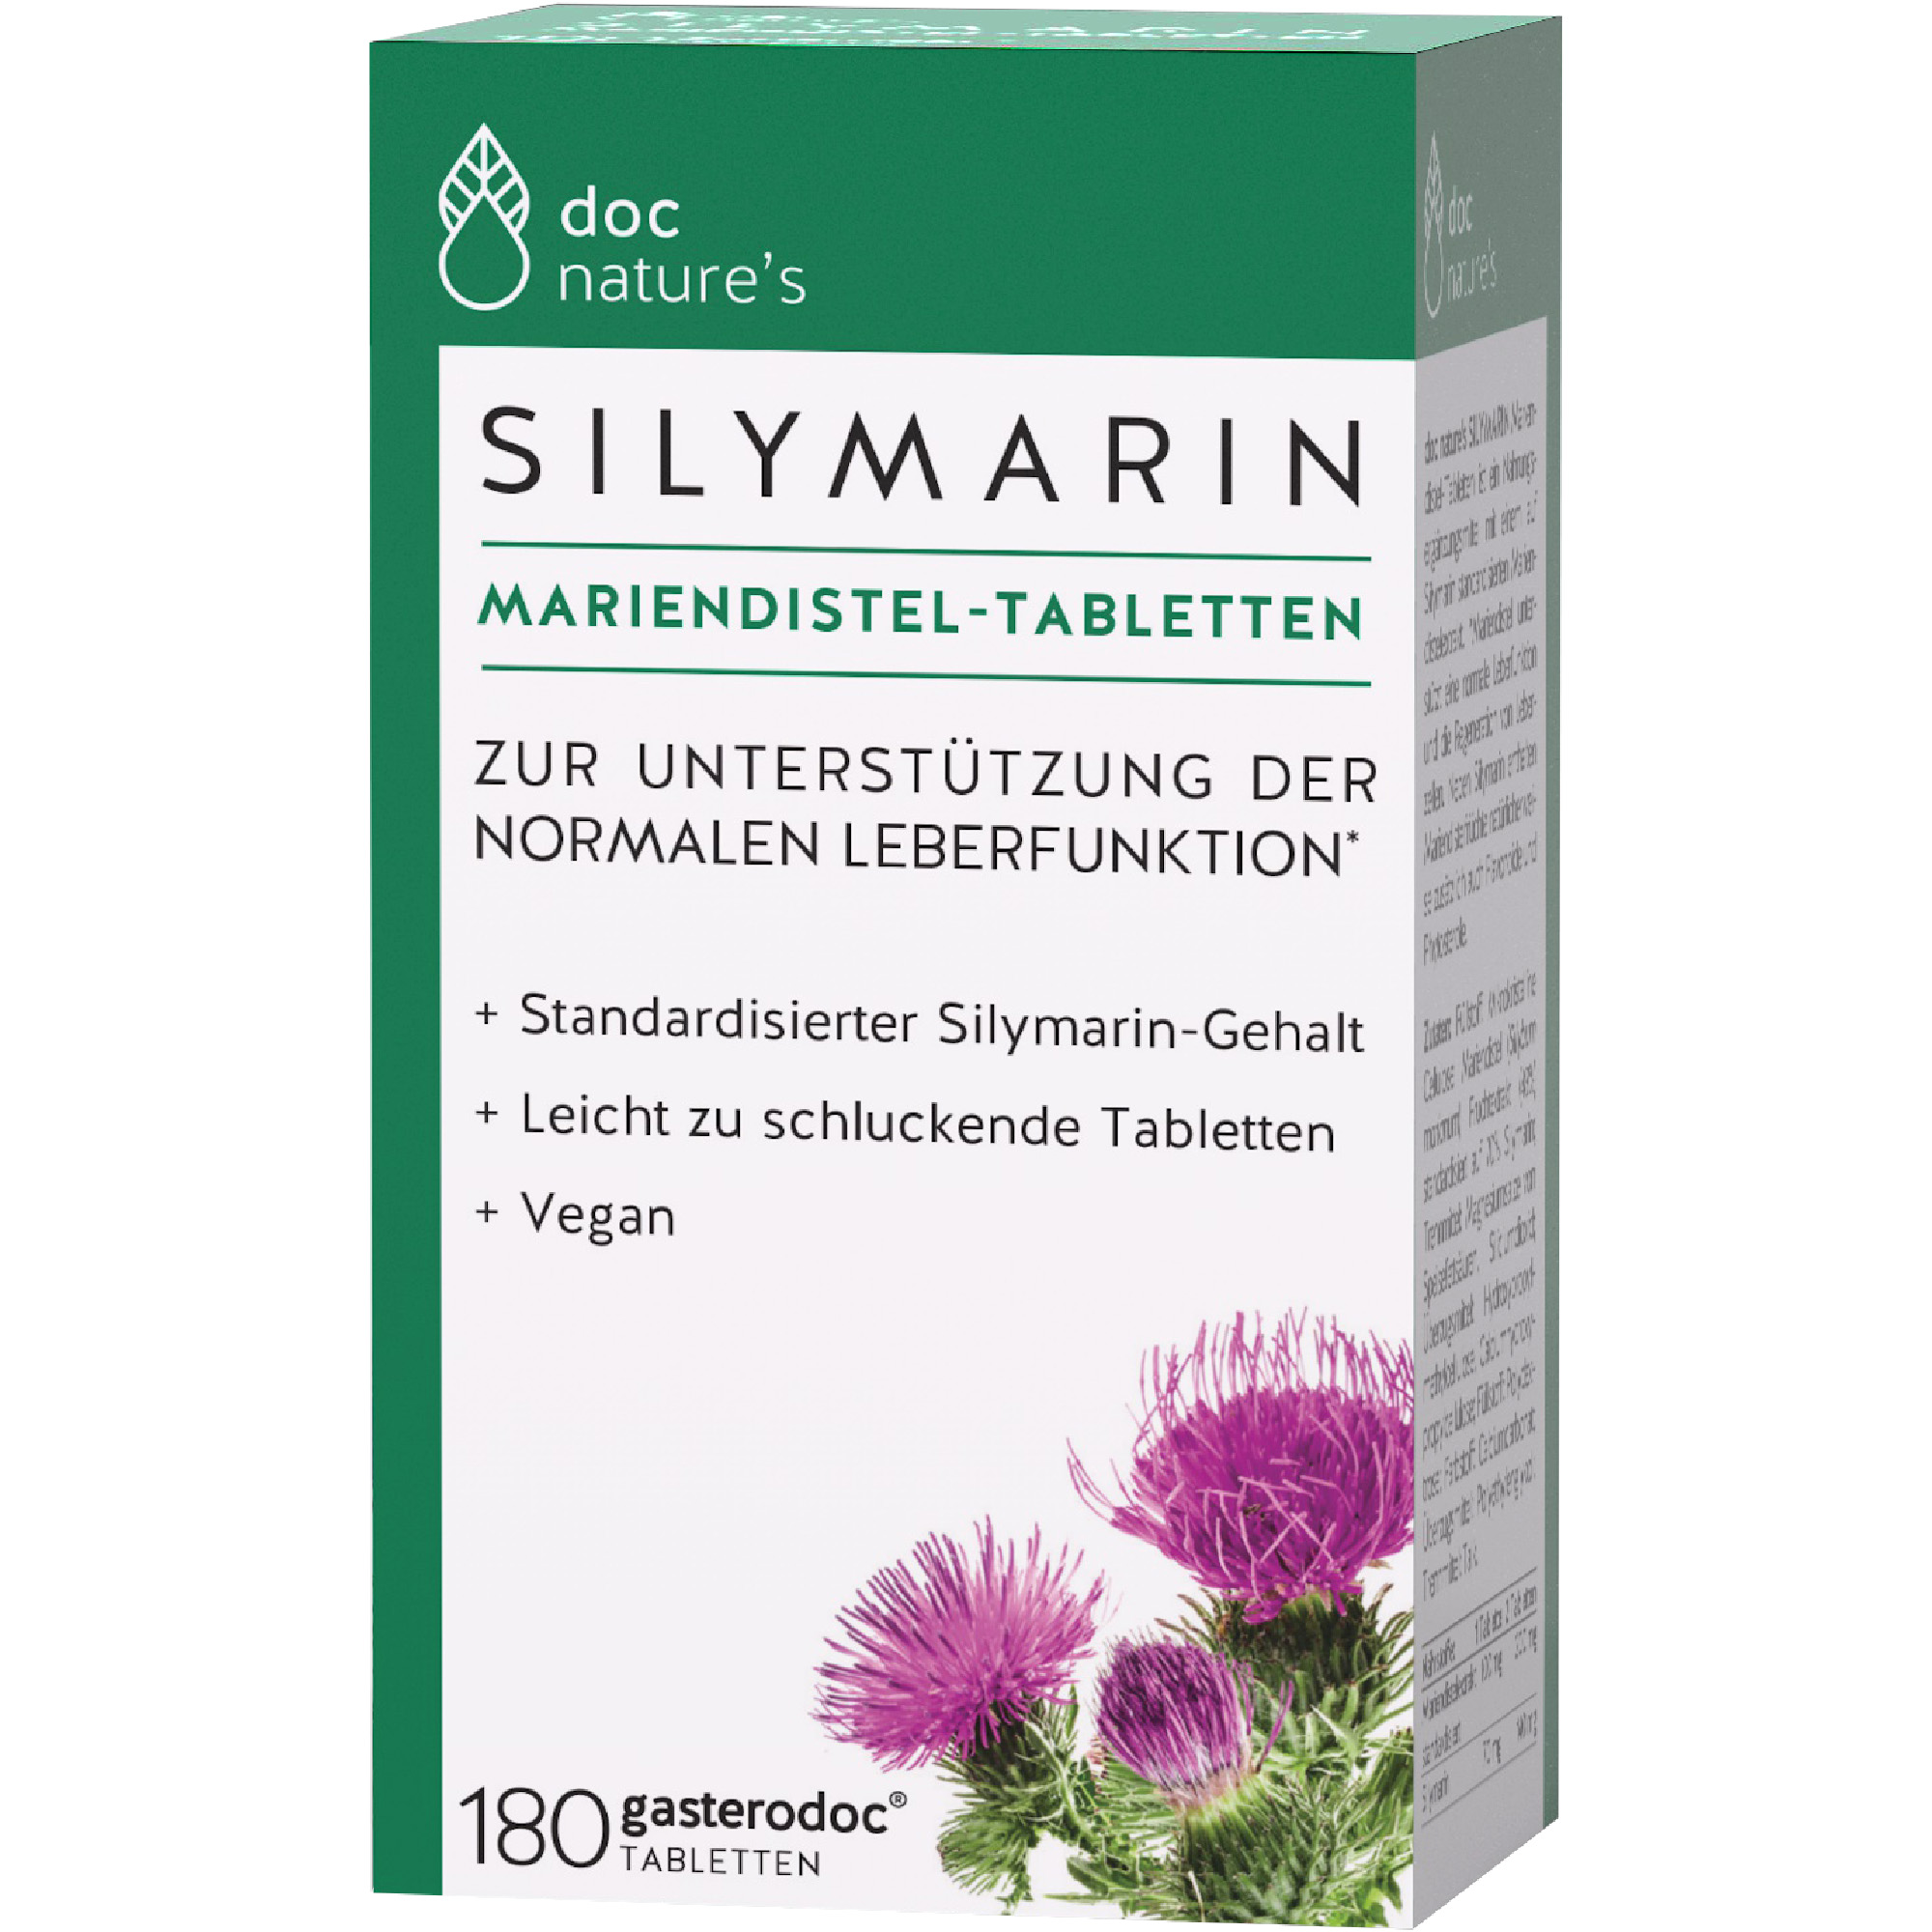 doc nature‘s SILYMARIN  Mariendistel-Tabletten